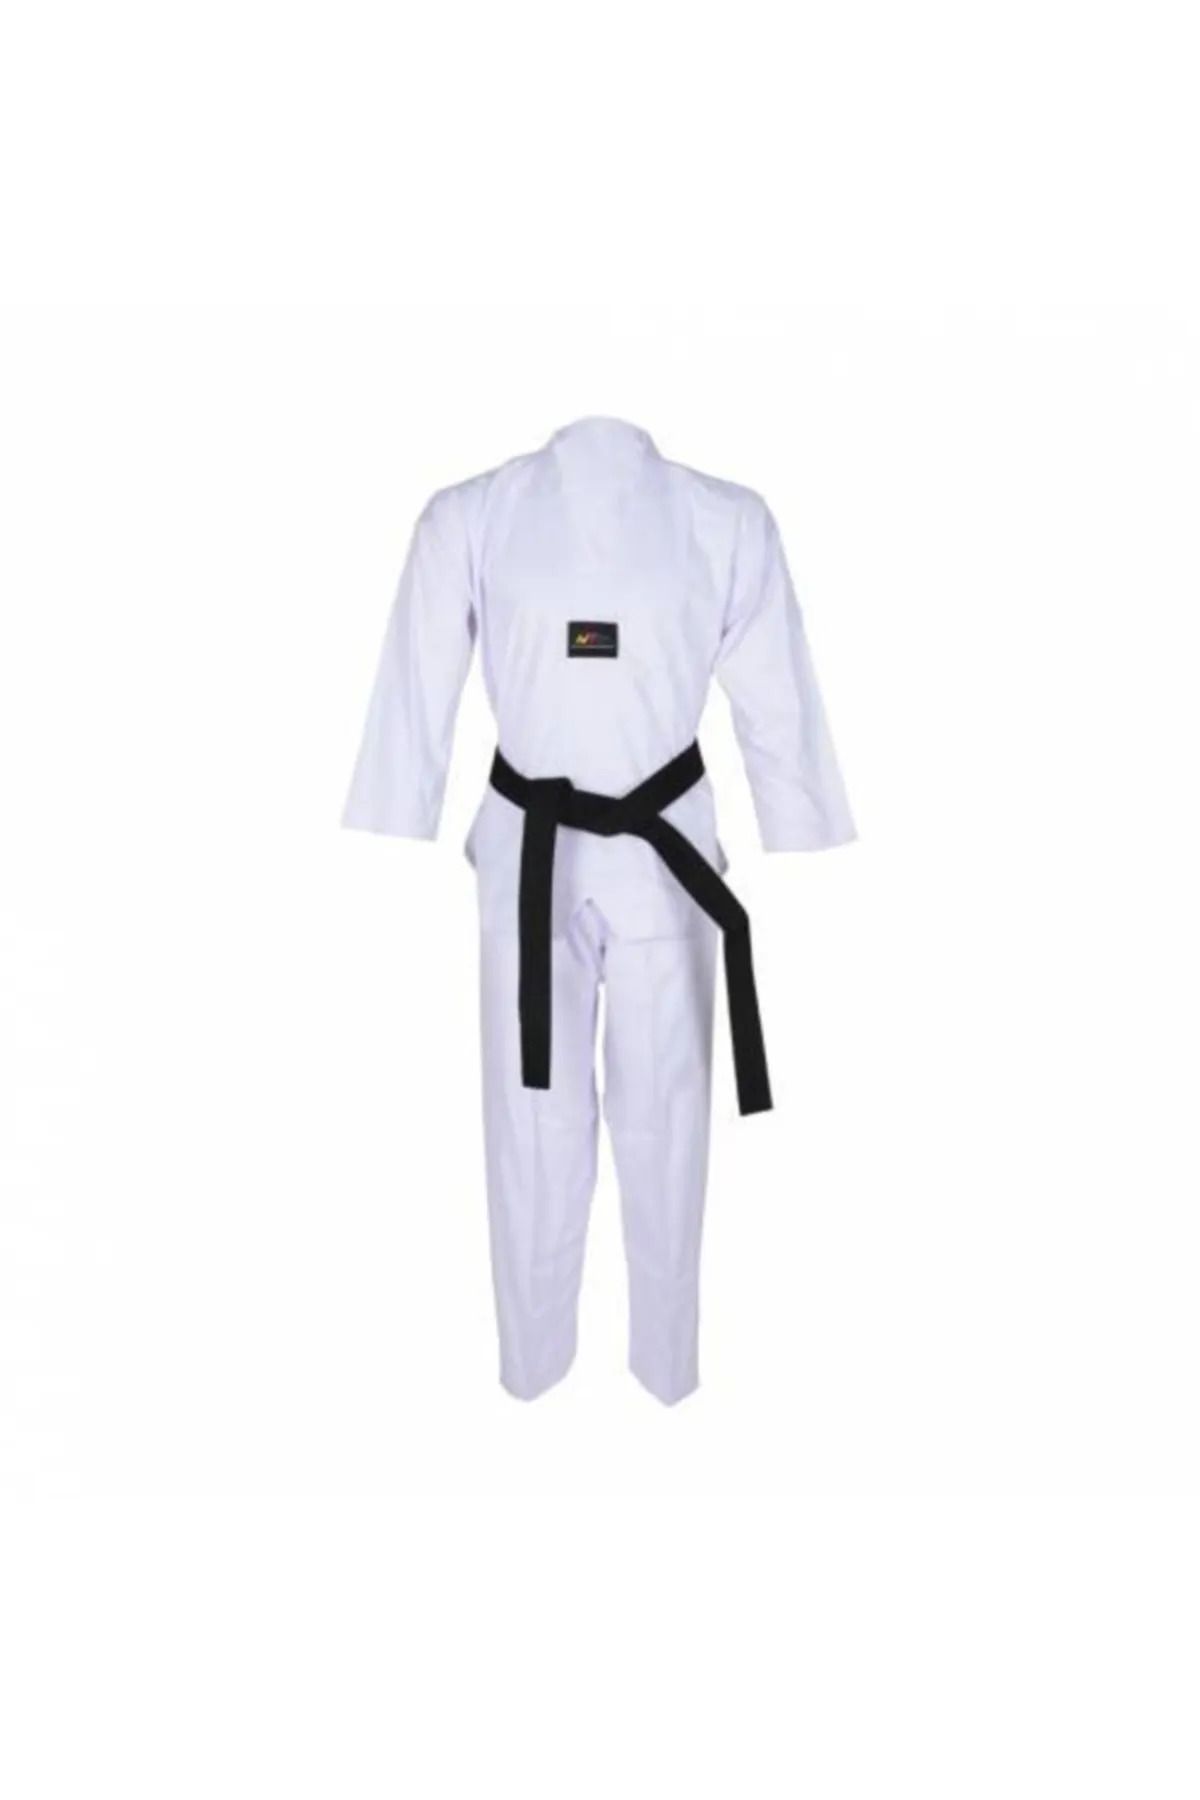 Taekwondo Acemi Taekwondo Elbisesi-Beyaz Yaka Taekwondo Elbisesi-Tekvando Elbisesi